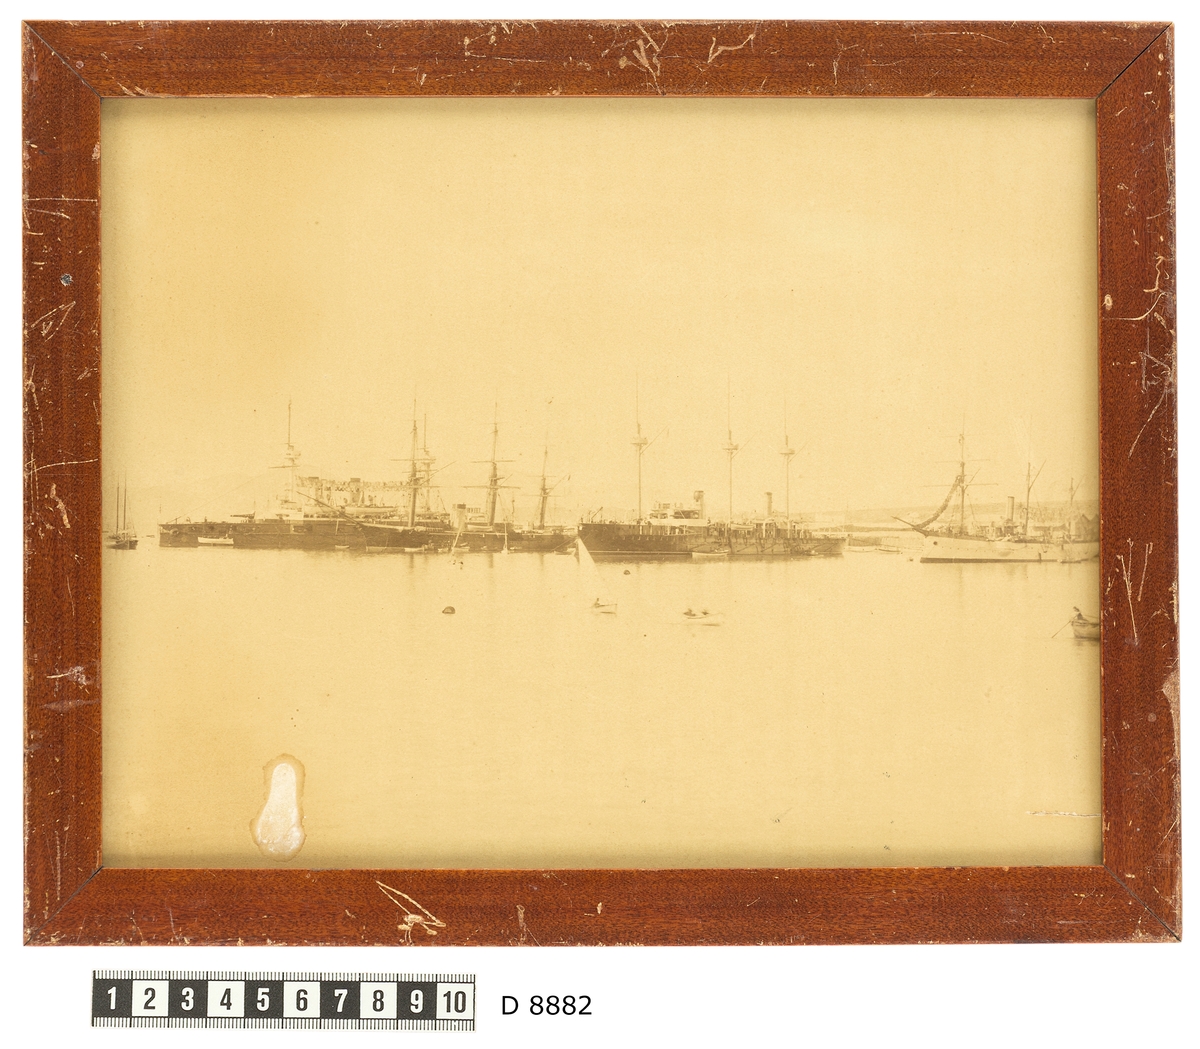 Bilden föreställer ångkorvetten Balder som ligger till ankars i Pireus bredvid tre andra örlogsfartyg. Fartygets syns från babordssidan med bärgade segel. Framför skeppet pågår en livlig trafik med skeppsbåtar.